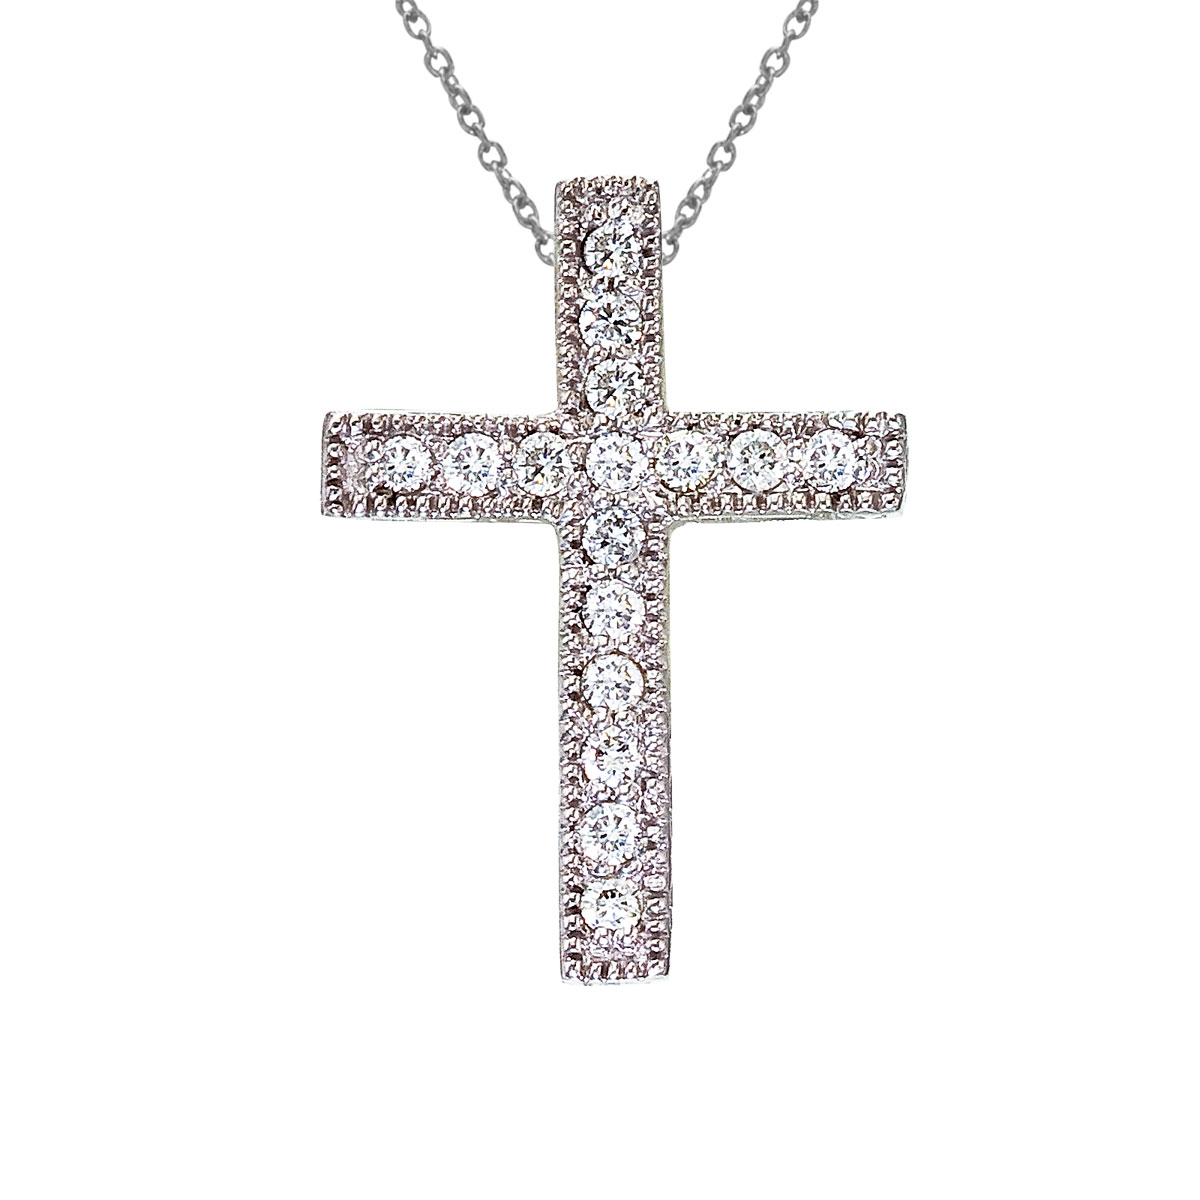 .16 ct diamond cross pendant set in 14k white gold.